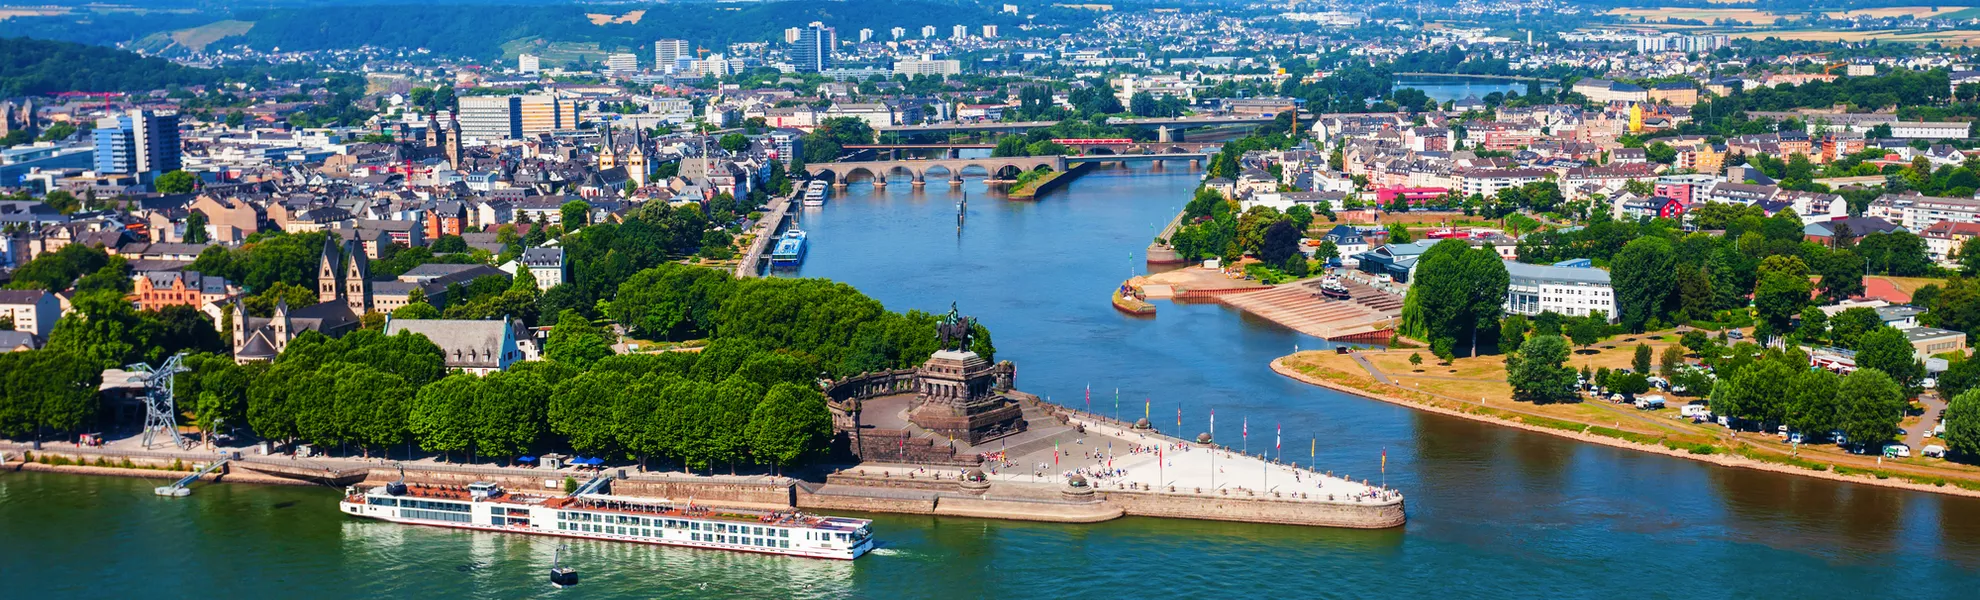 Skyline der Stadt Koblenz in Deutschland - © saiko3p - stock.adobe.com